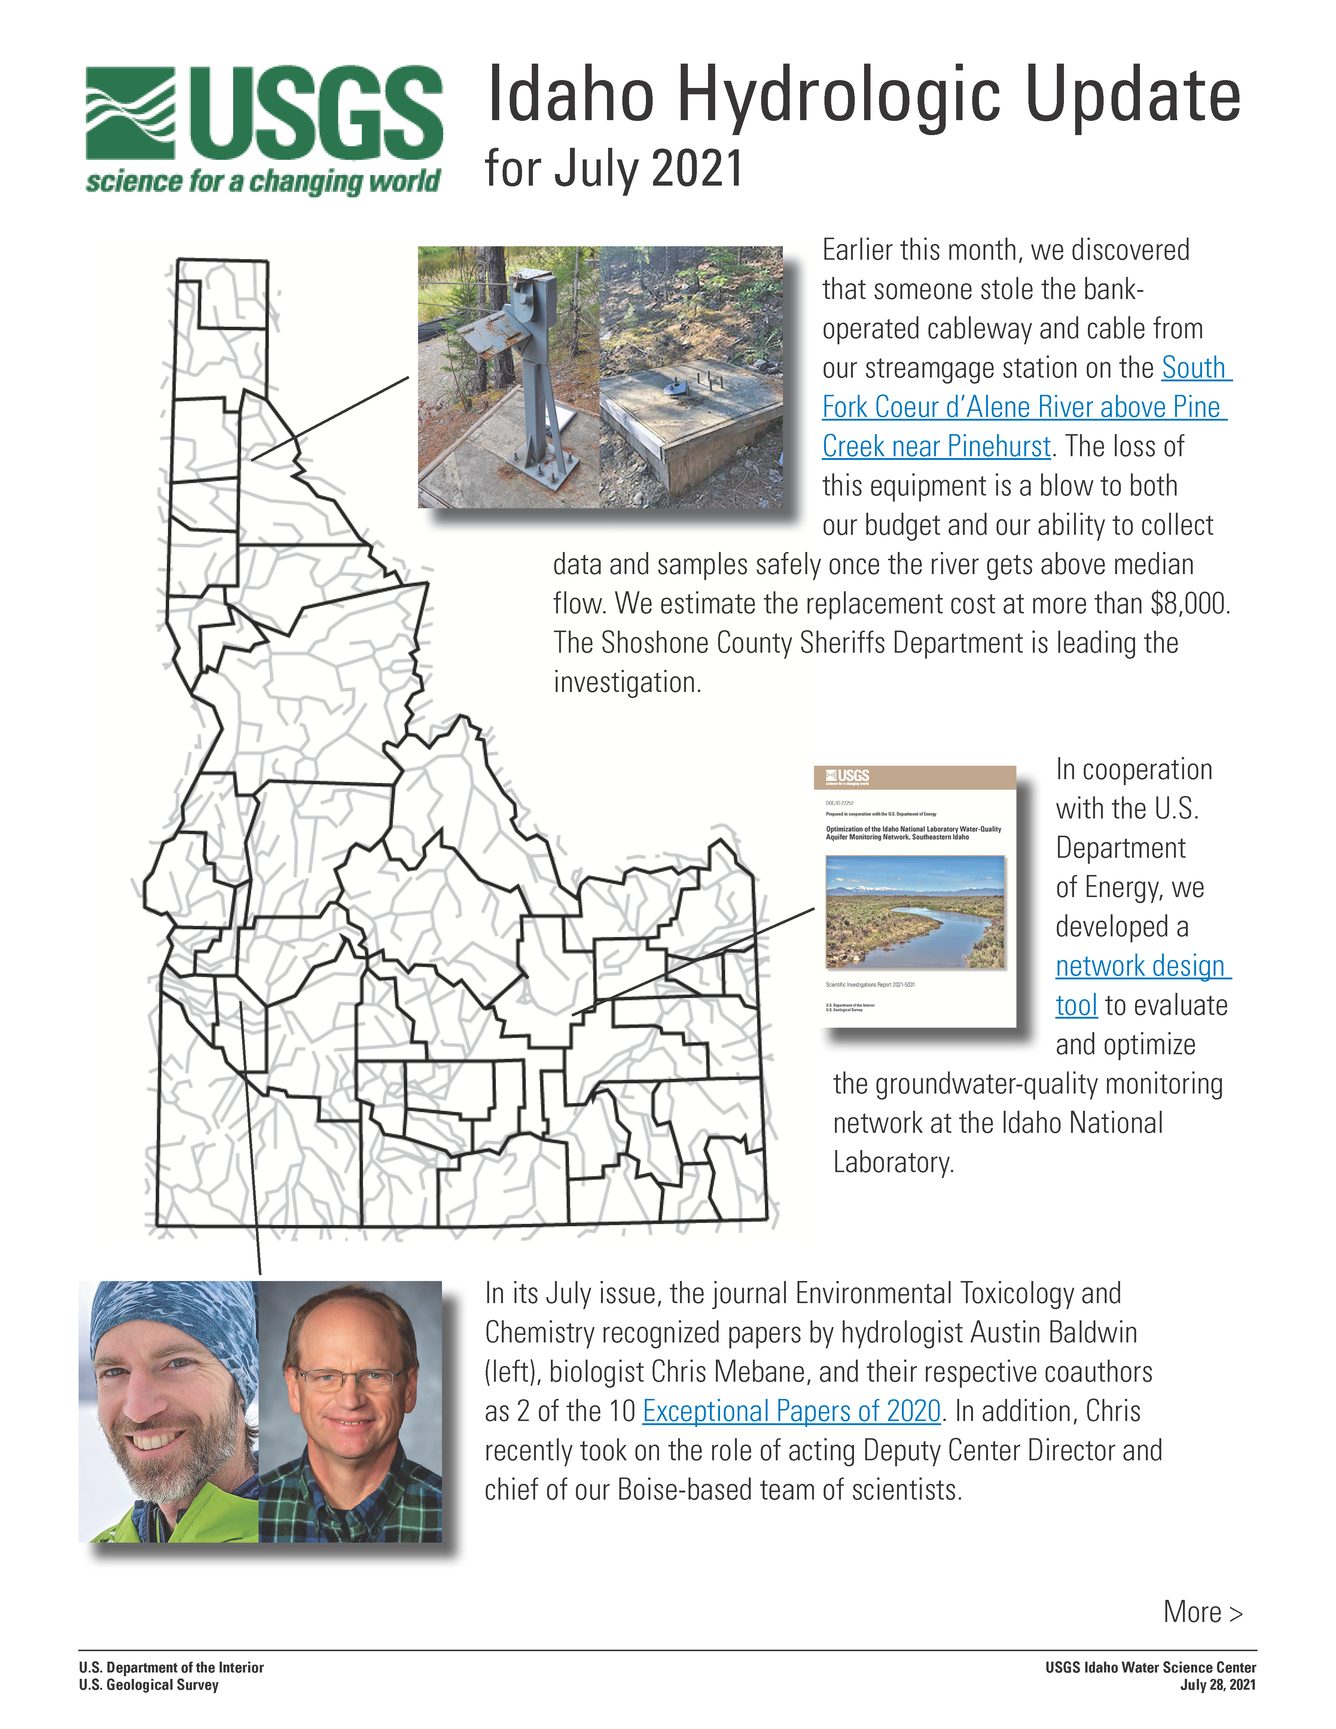 Idaho Hydrologic Update, July 2021